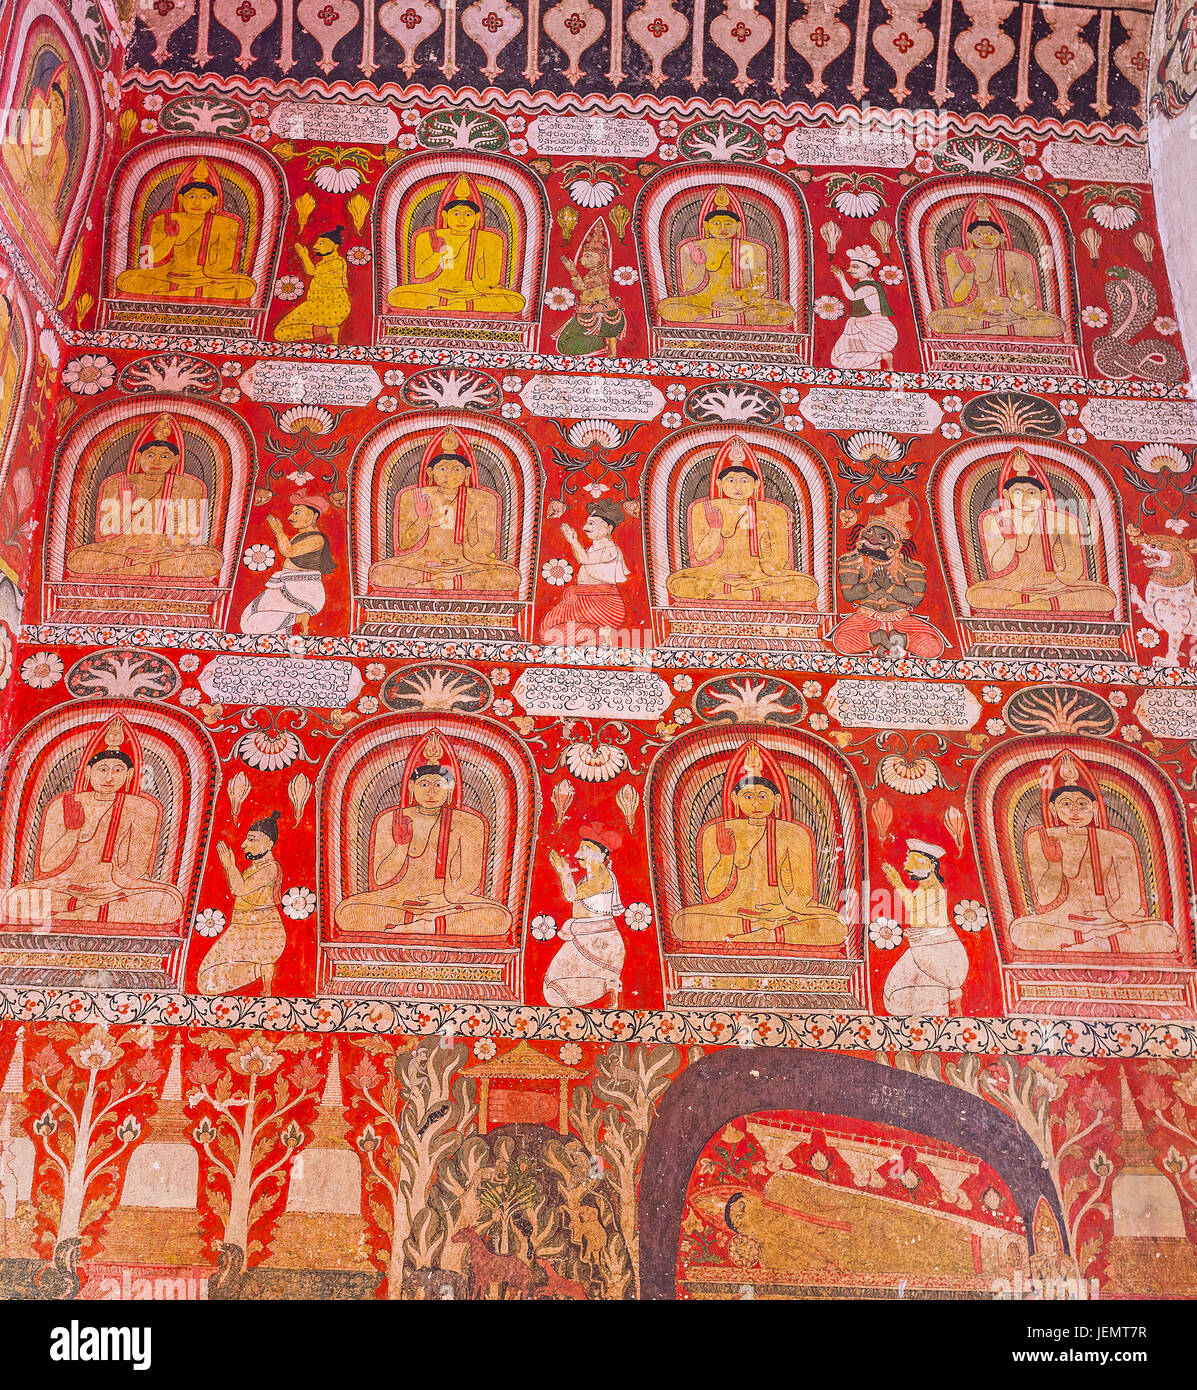 UDUNUWARA, SRI LANKA - le 29 novembre 2016 : le mur en image house de Lankathilaka Suvisi Vivarana Vihara décoré de peintures lumineuses, le 9 novembre Banque D'Images